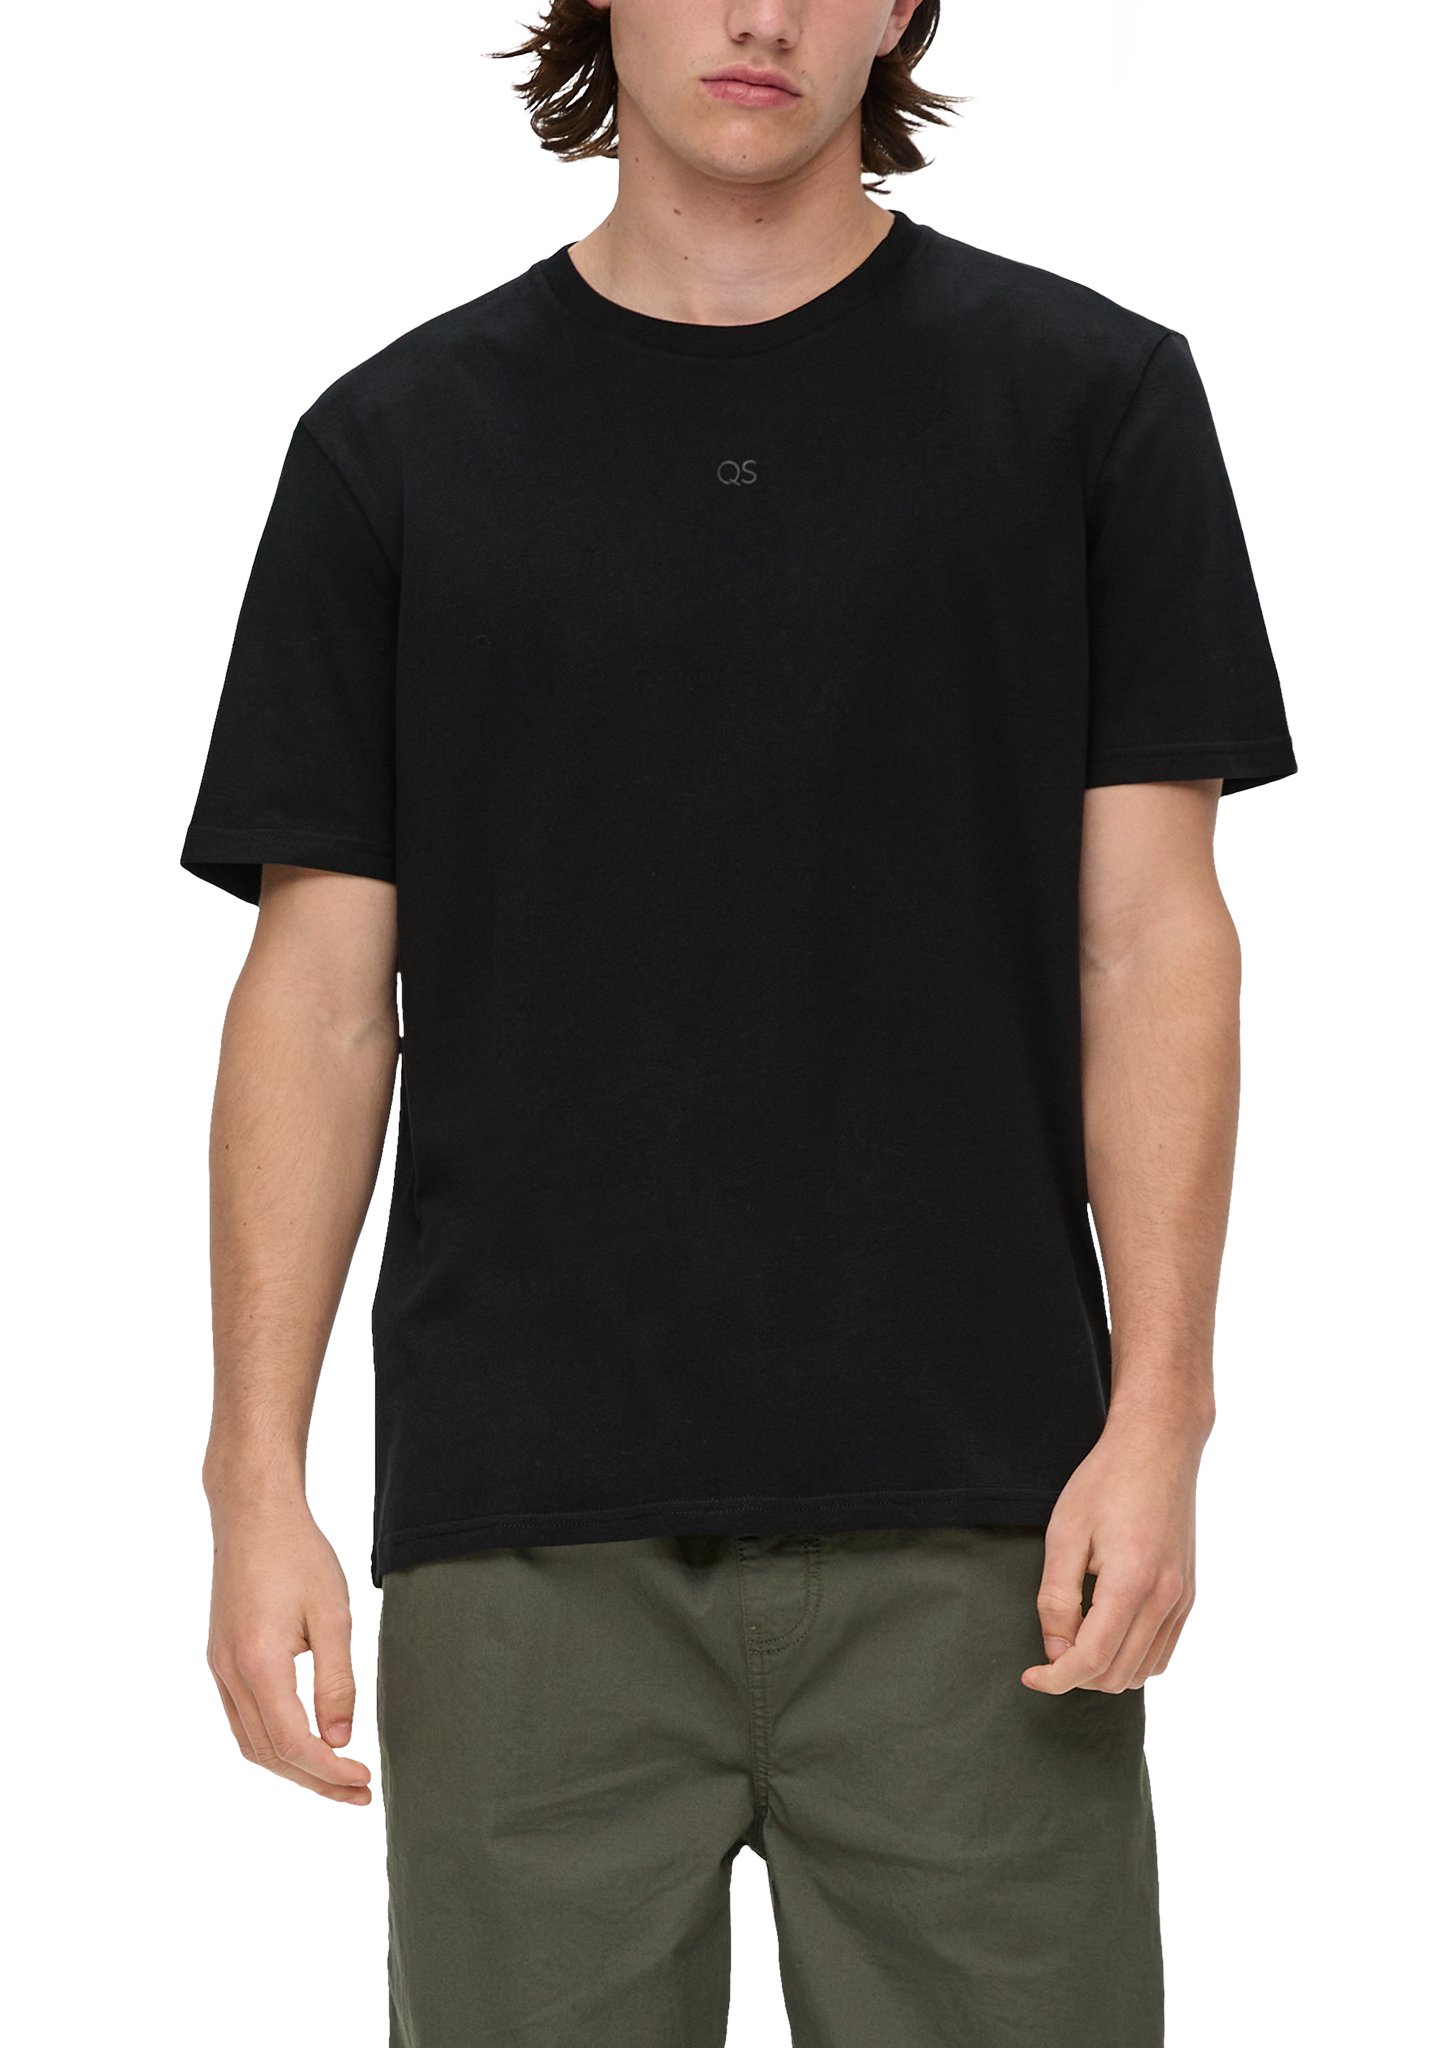 QS - T-Shirt mit Label-Print, Herren, schwarz von QS